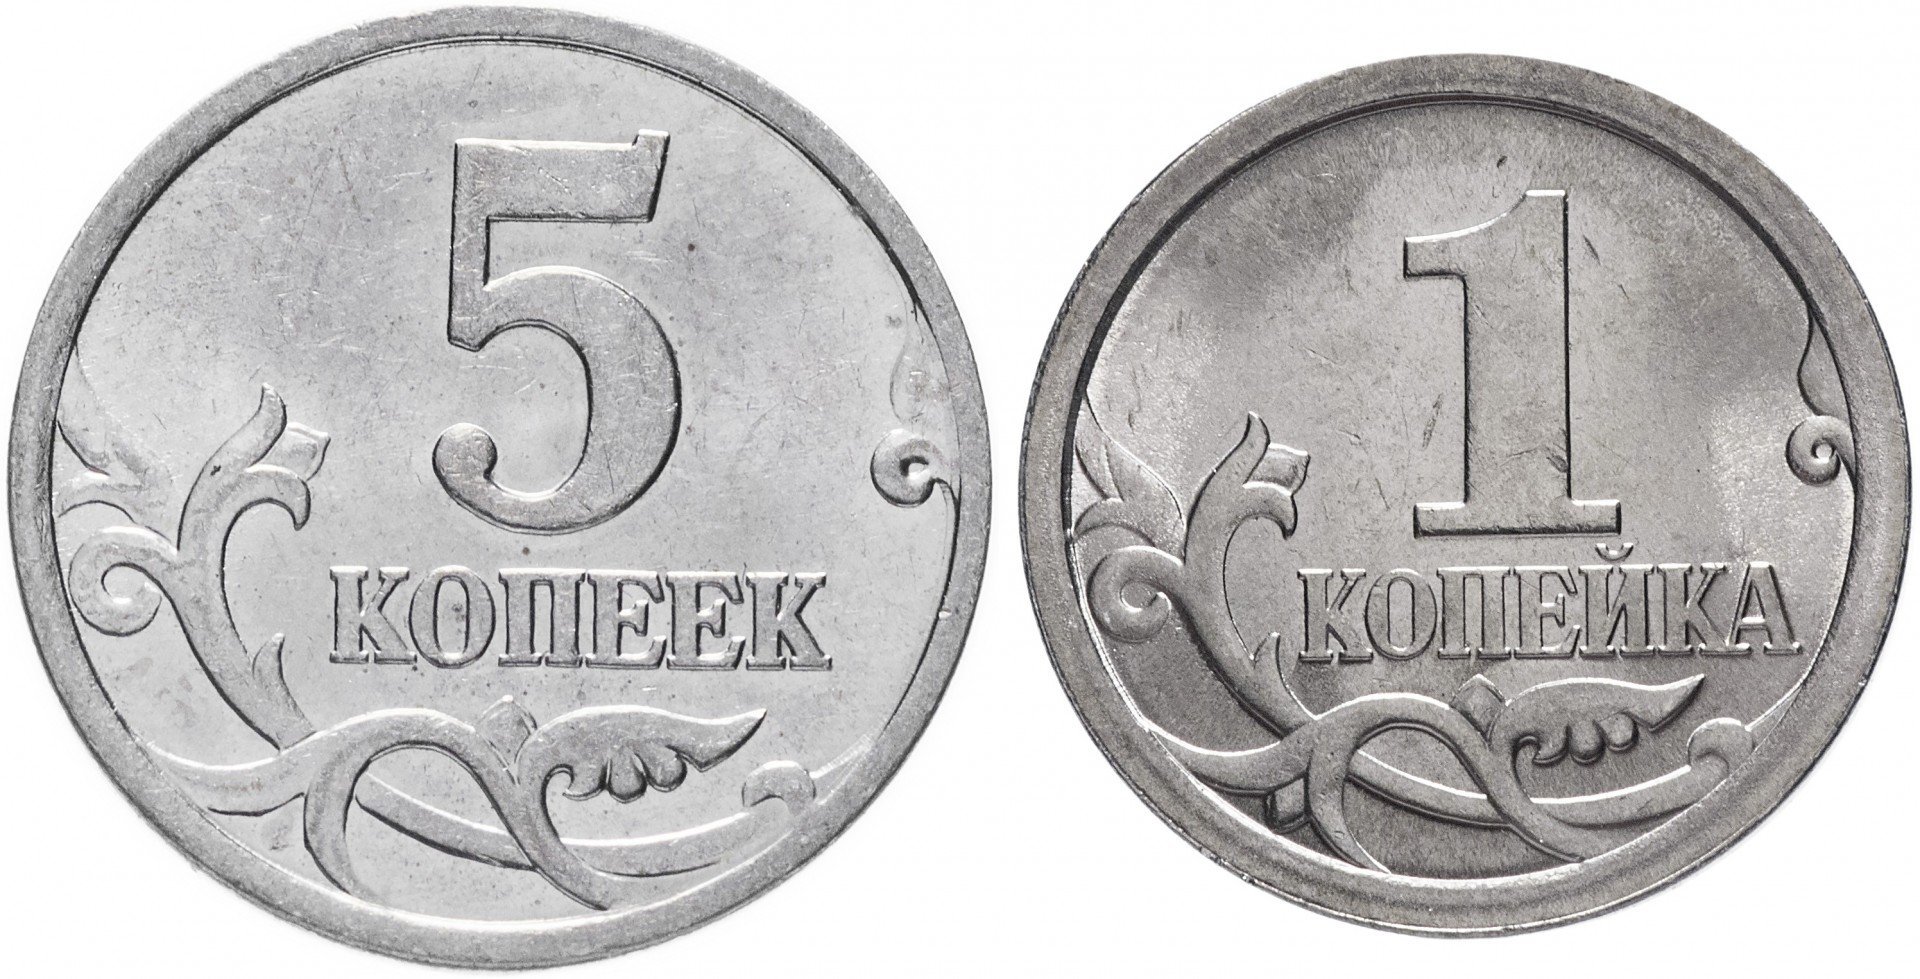 38 5 в рублях. Российские монеты 1 копейка. Монеты 5 копеек и 1 копейка и 1 рубль. 1 Копейка и 5 копеек. Монеты 1 копейка 5 копеек.